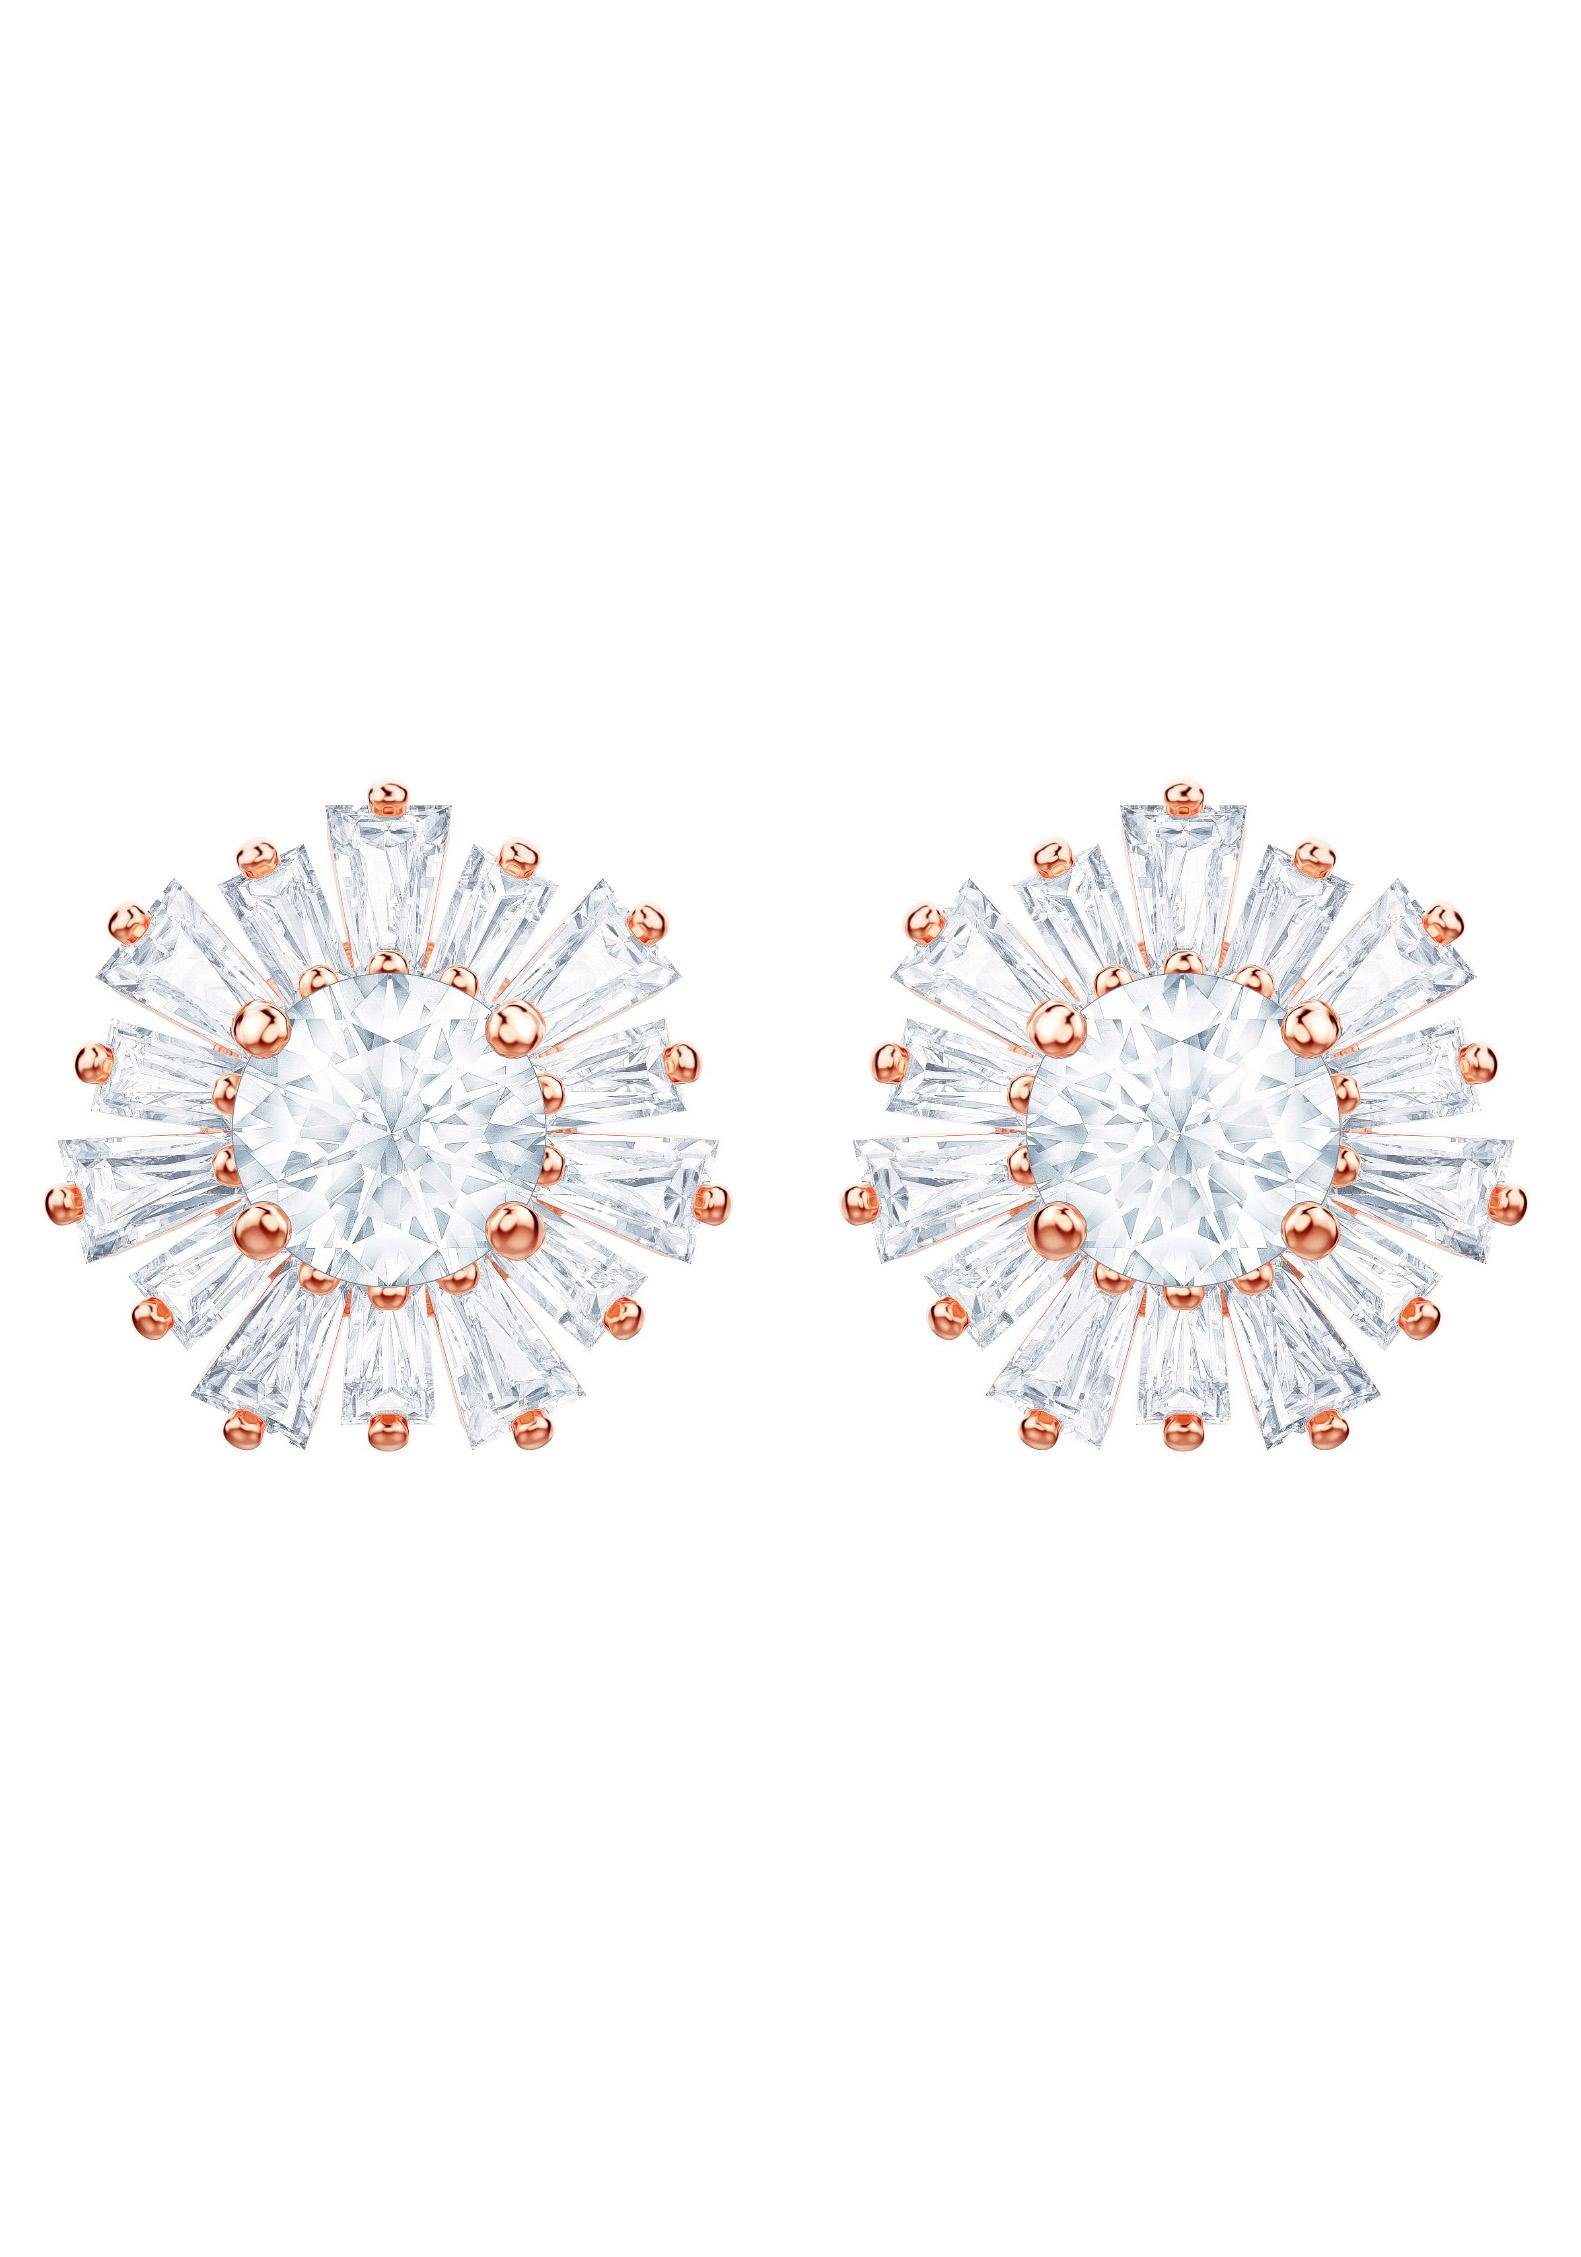 Kristallen mit Paar weiss, Vergoldung, Ohrstecker Swarovski® 5459597, rosé Sunshine, Swarovski